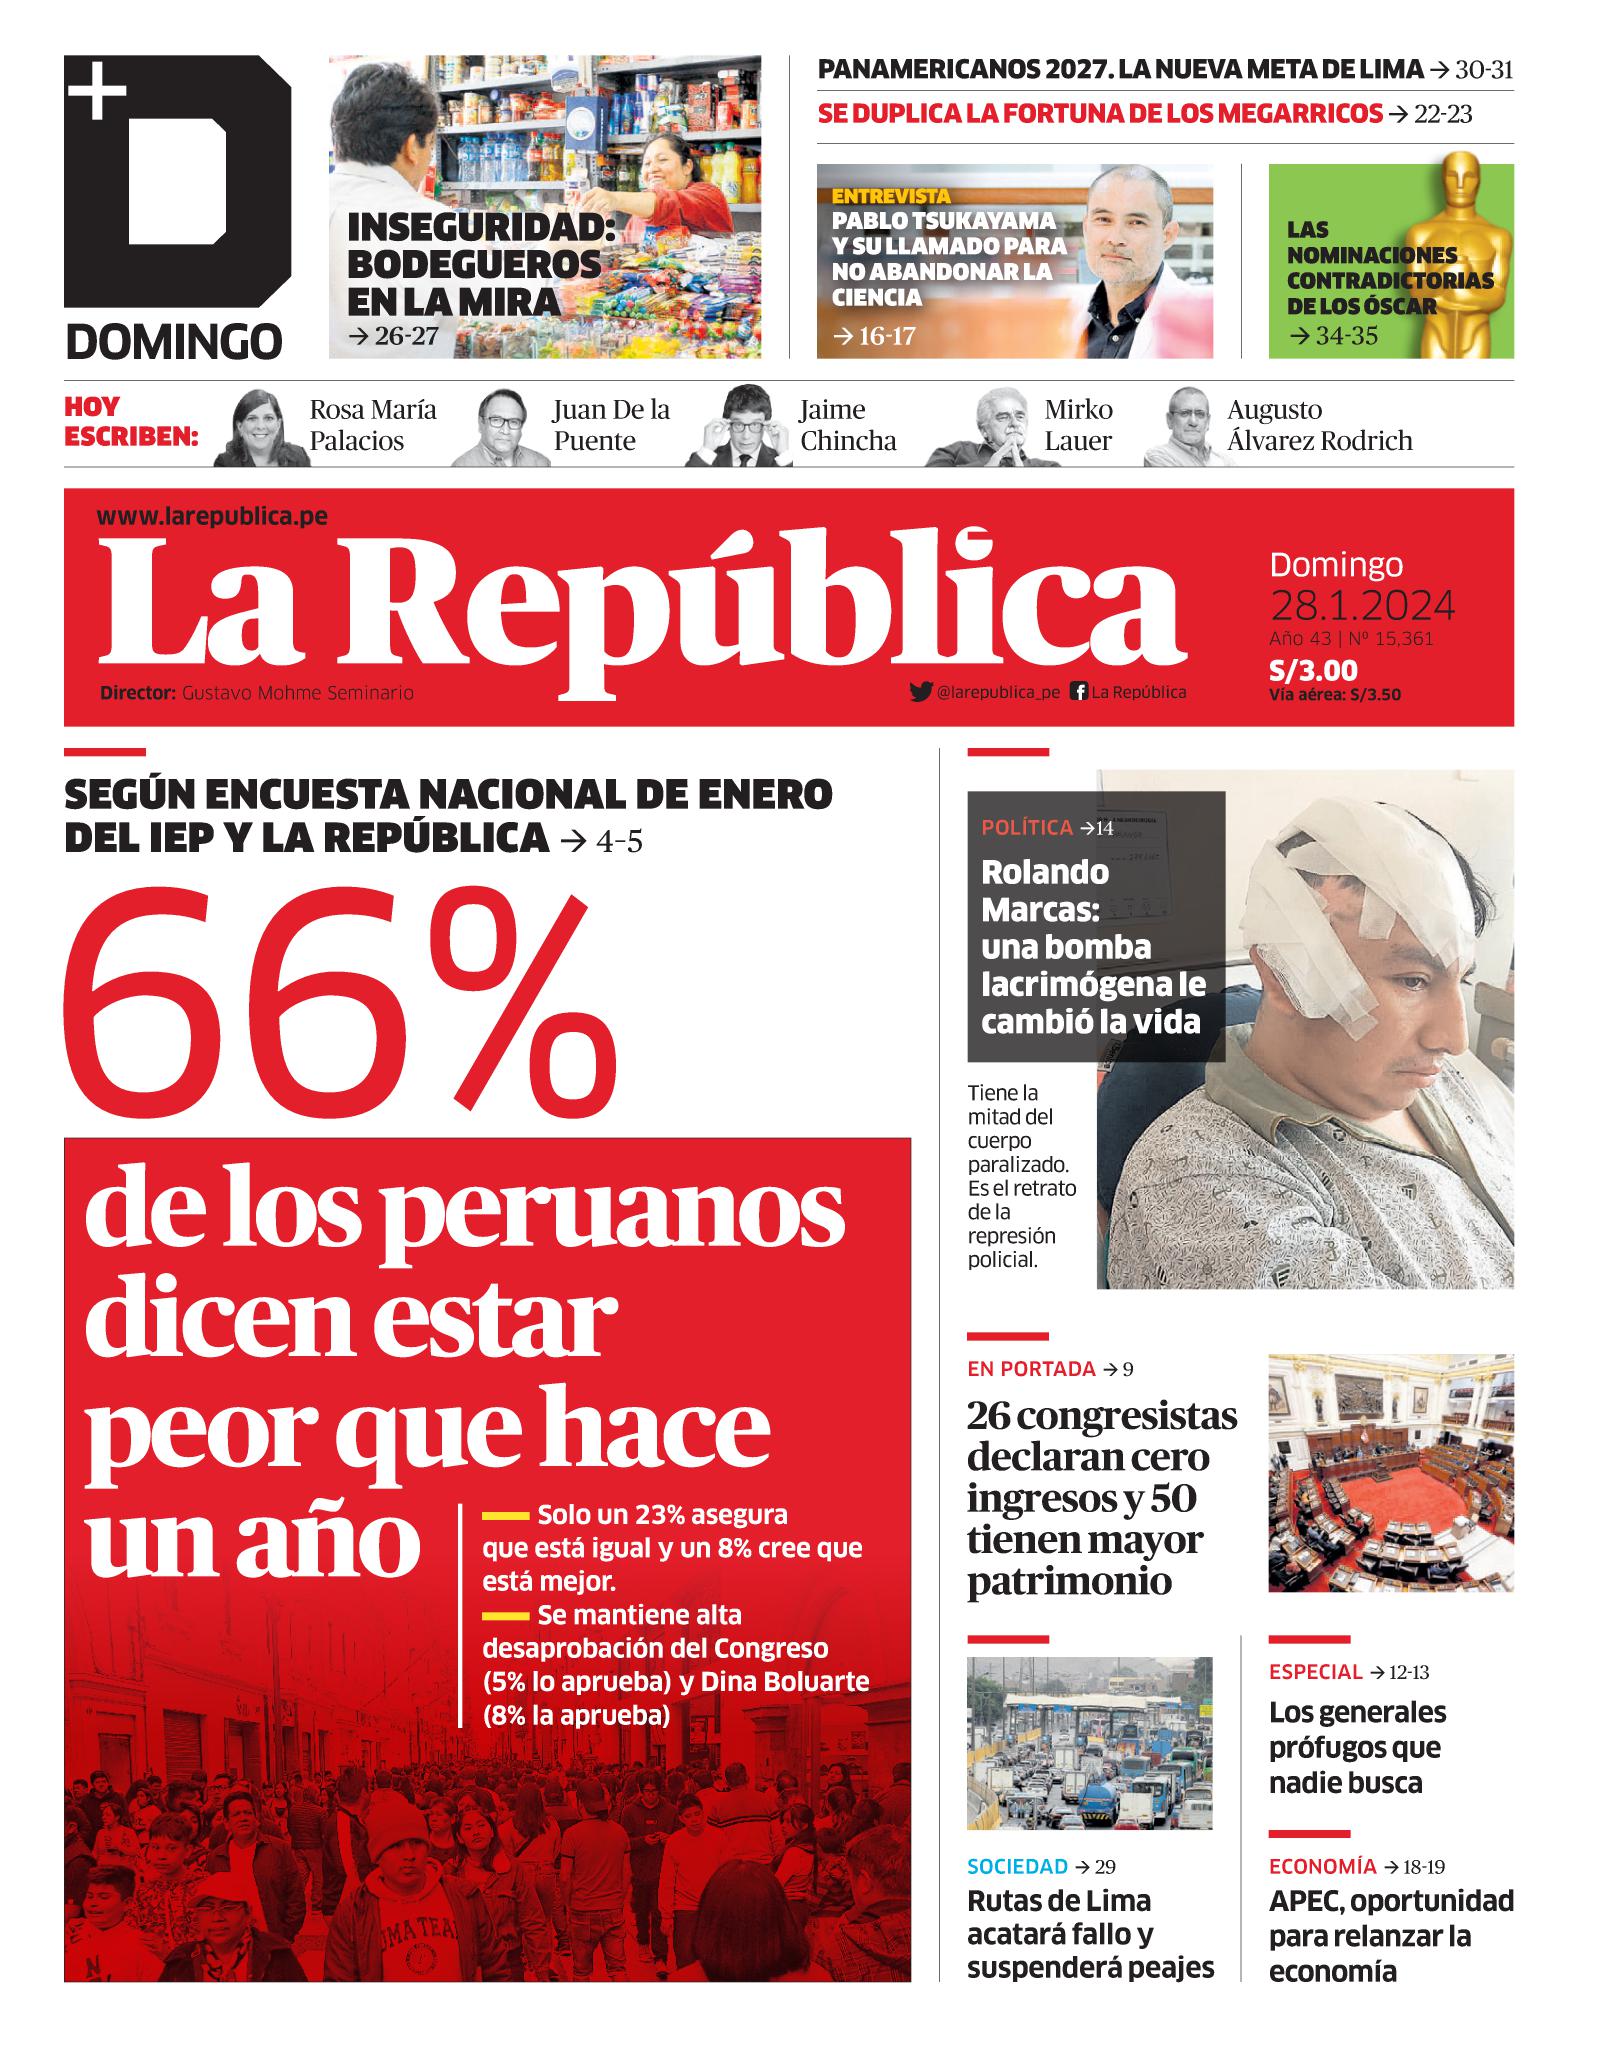 Noticias de política del Perú - Página 12 01